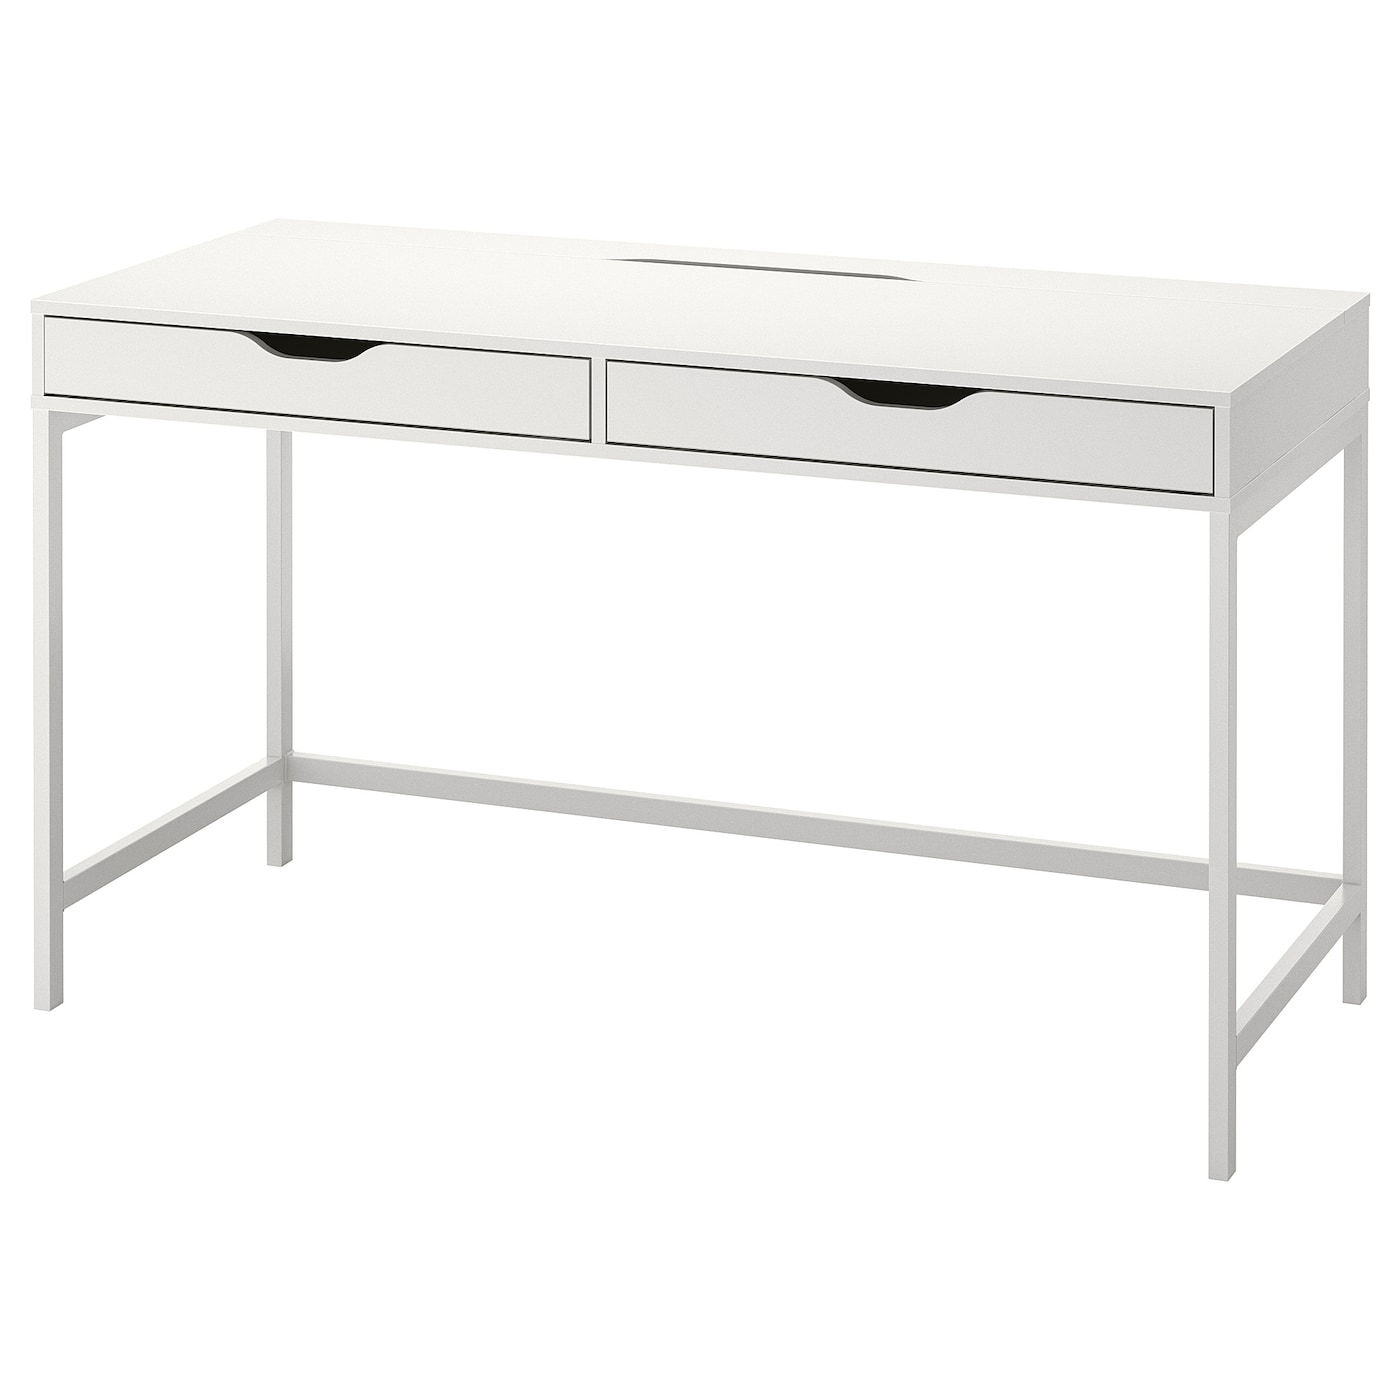 Письменный стол с ящиками - IKEA ALEX, 132x58 см, белый, АЛЕКС ИКЕА